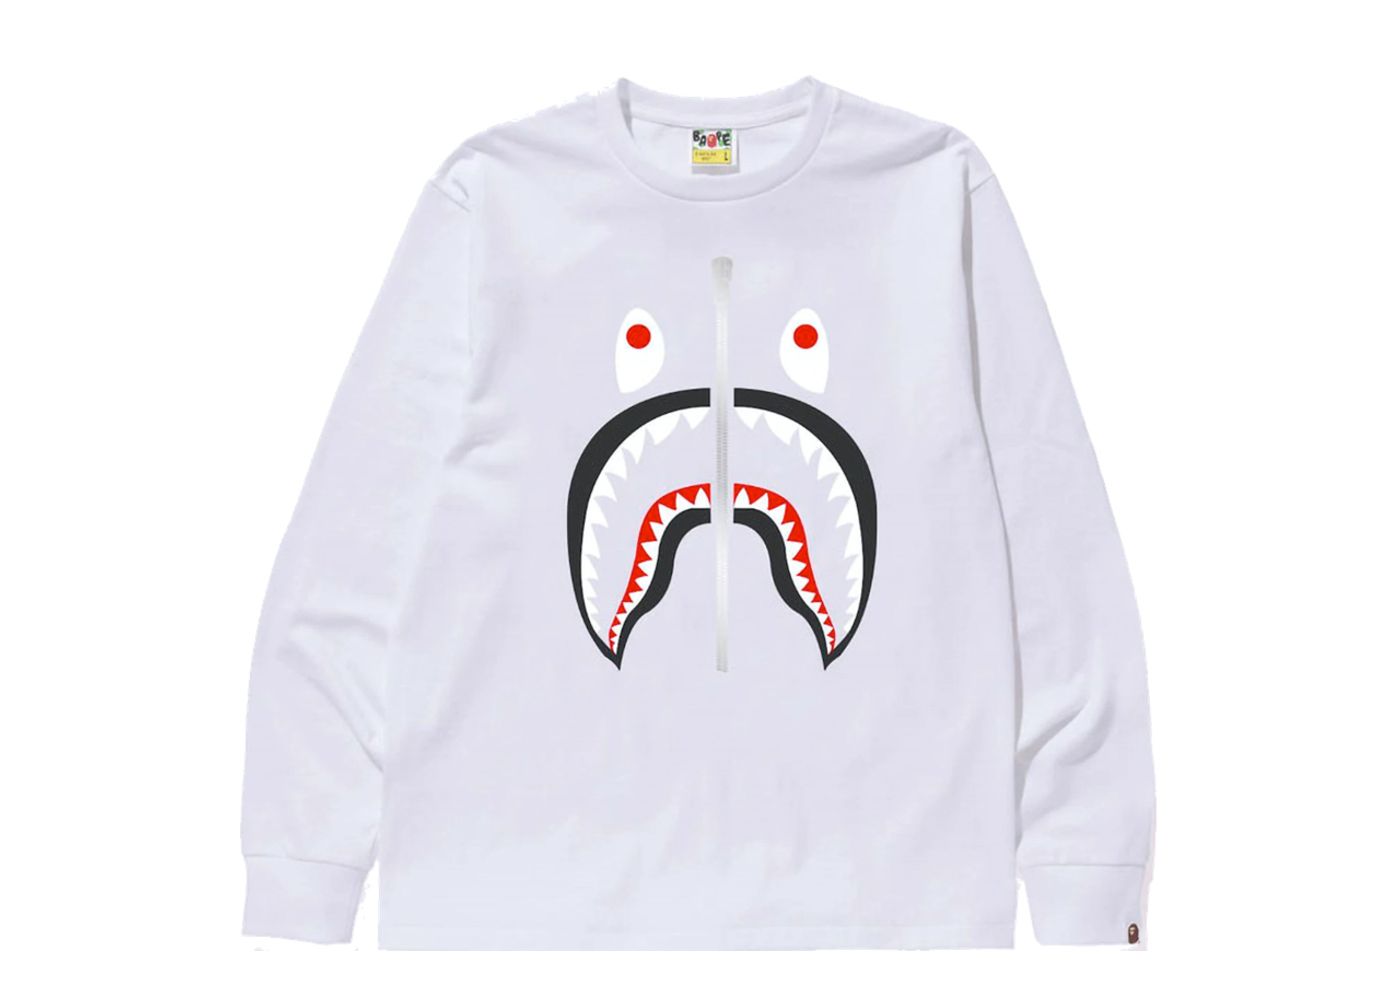 送無 L Jaws Bape tee shirt white 1 白 shark - www ...